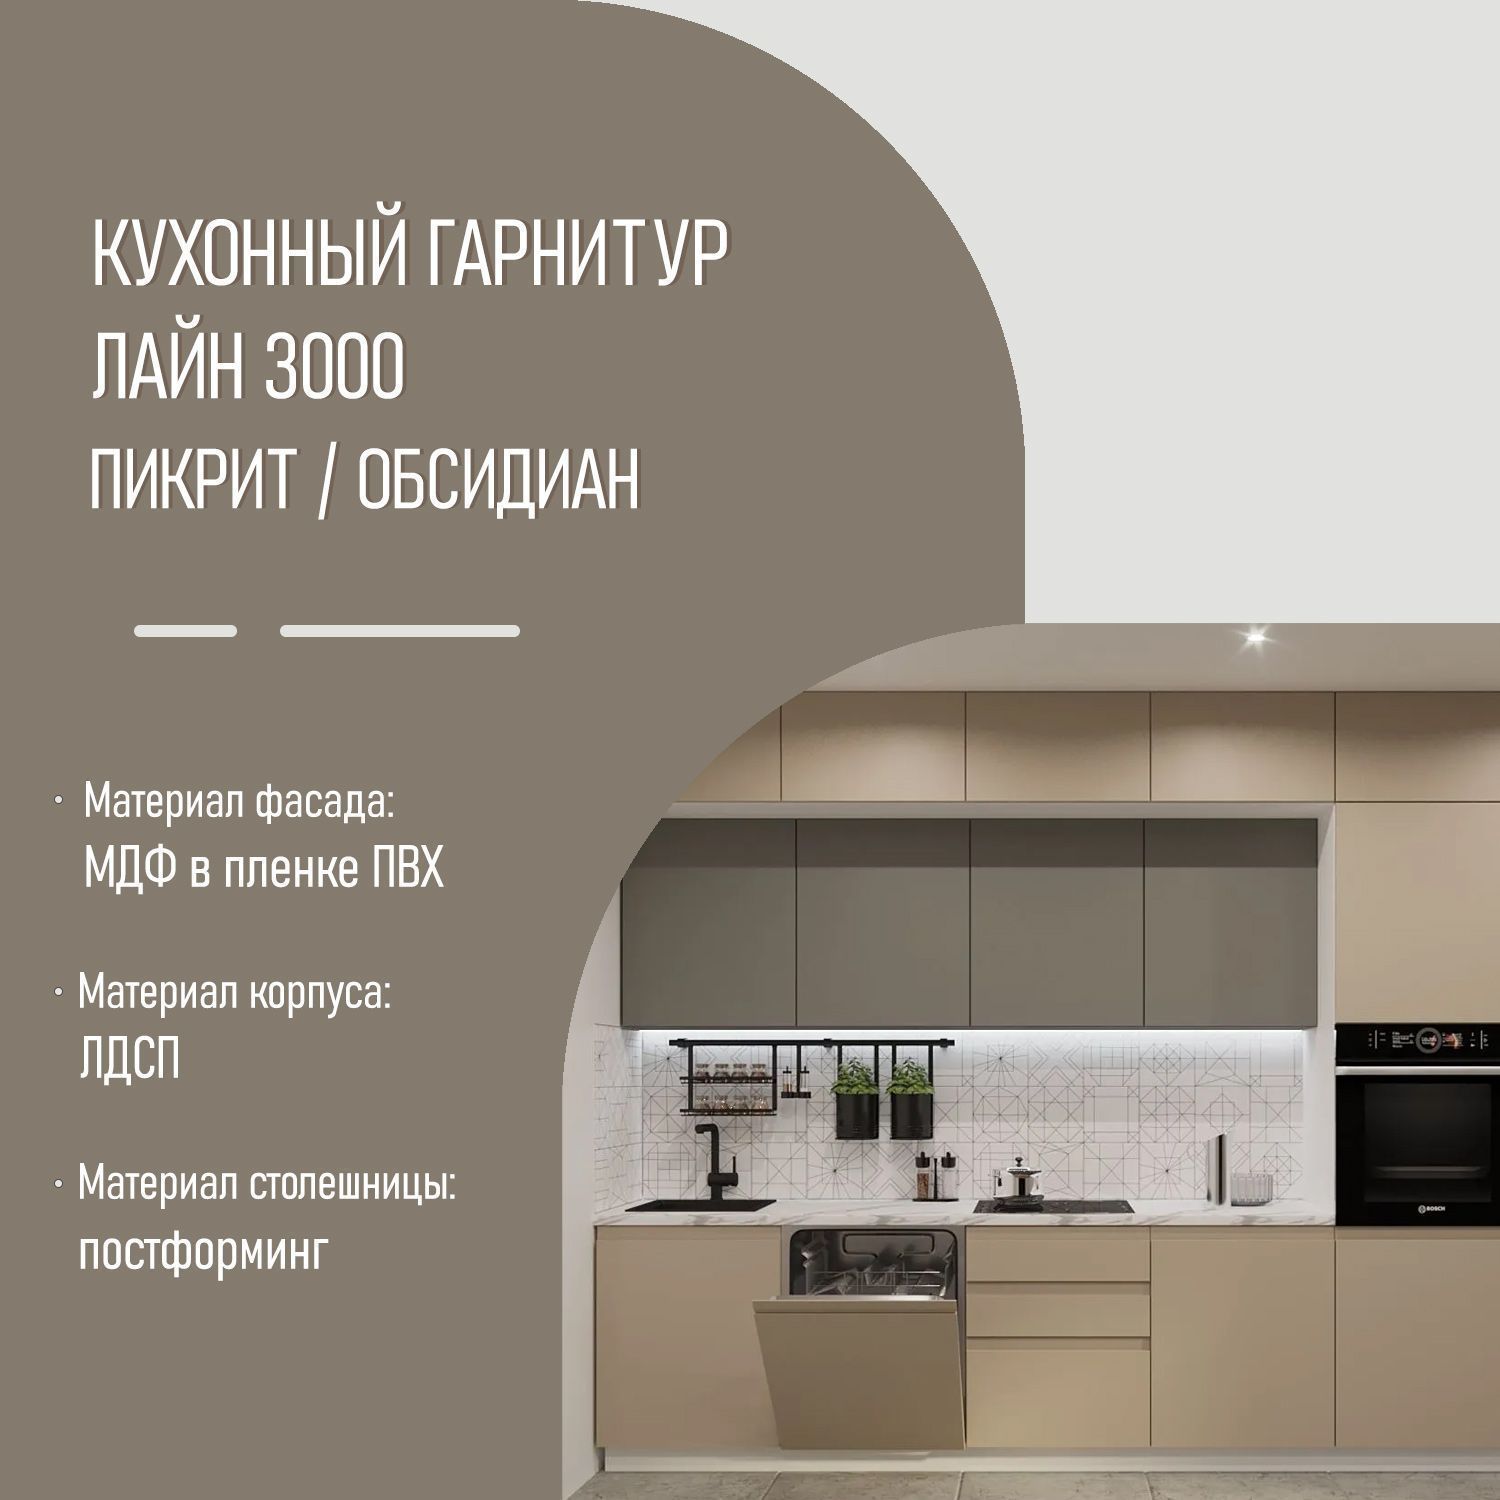 Кухонный гарнитур без ручек Пикрит / Обсидиан Лайн 3000 с пеналом (арт.51)